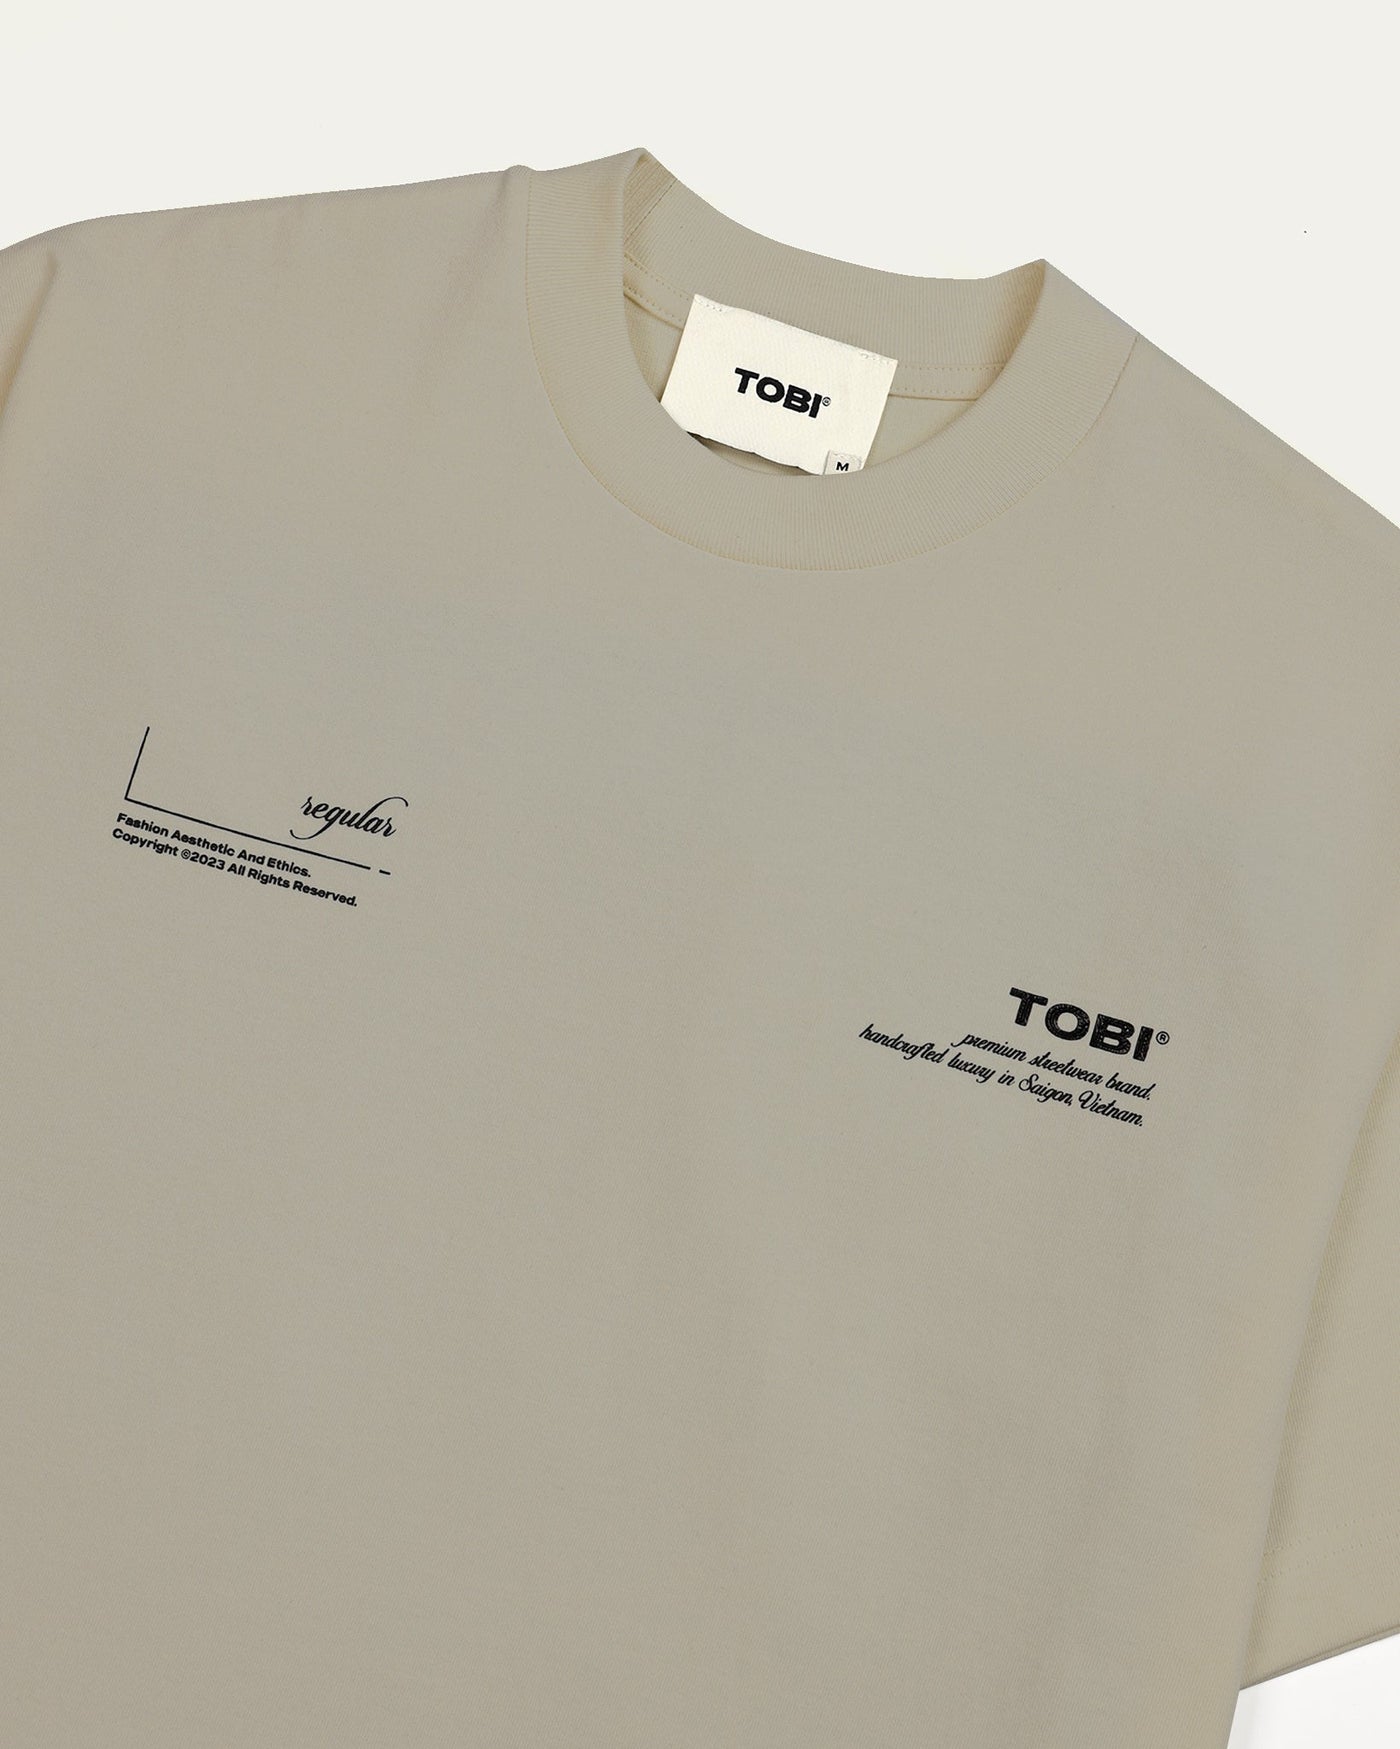 TOBI 280gsm Regular 2.0 Boxy T-shirt - Off White - TOBI